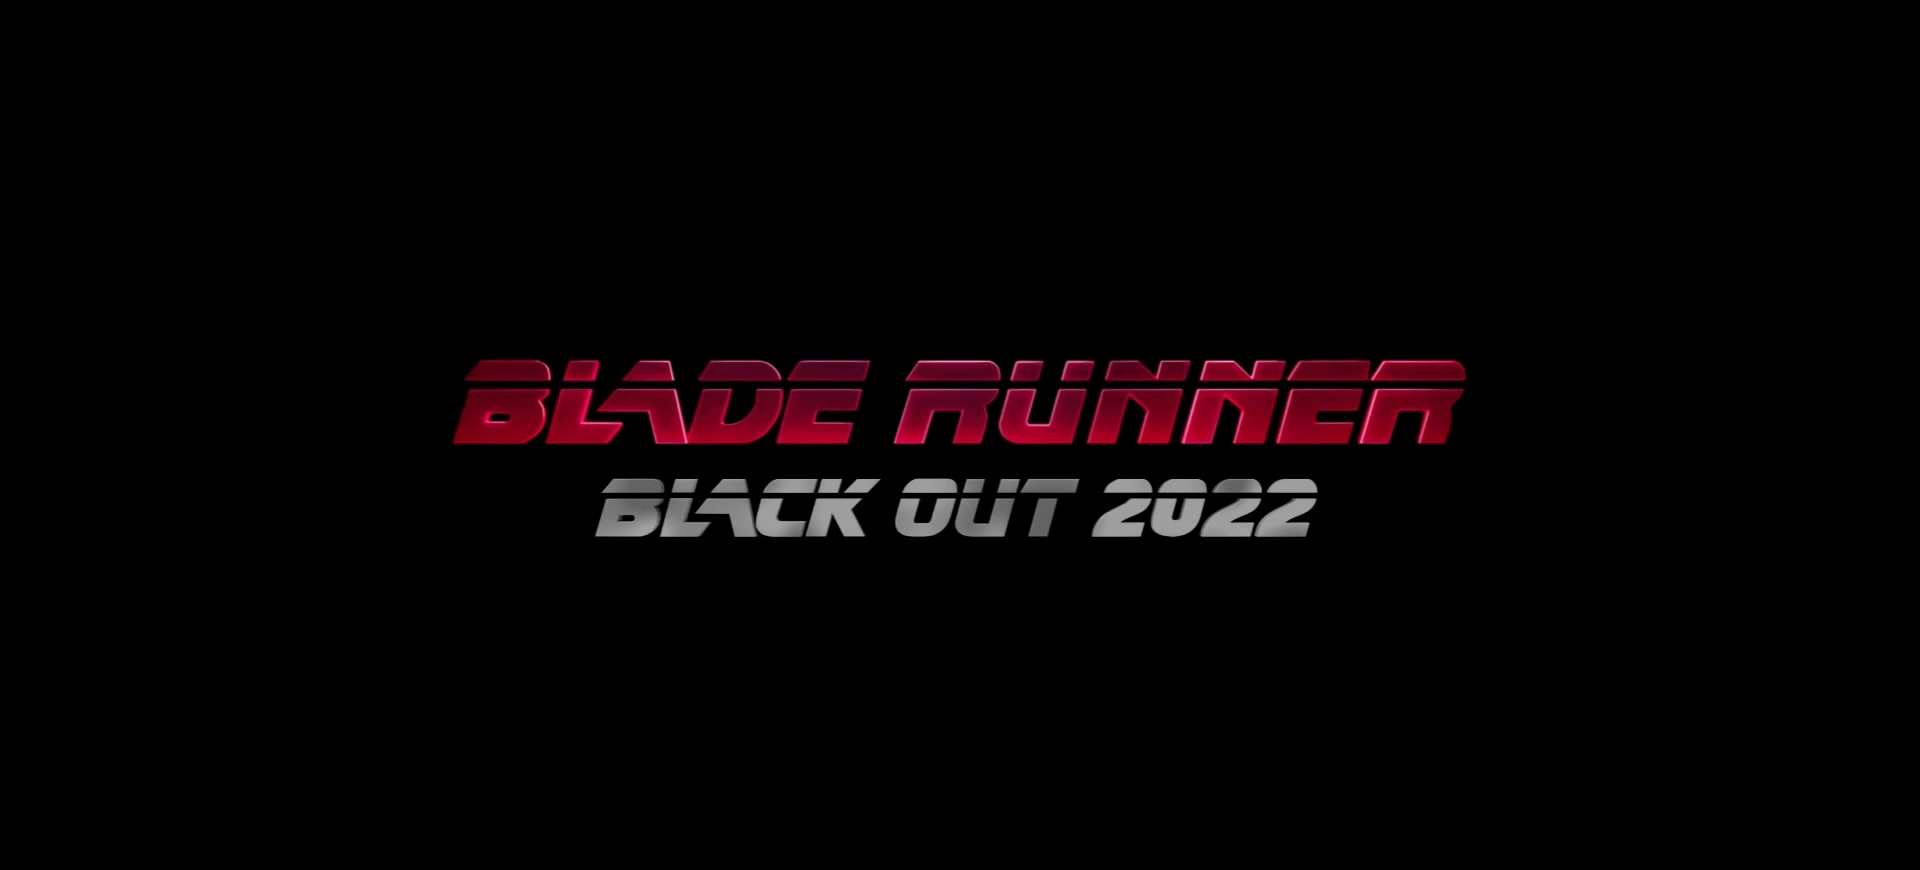 Screenshot: Blade Runner 2022: Black Out